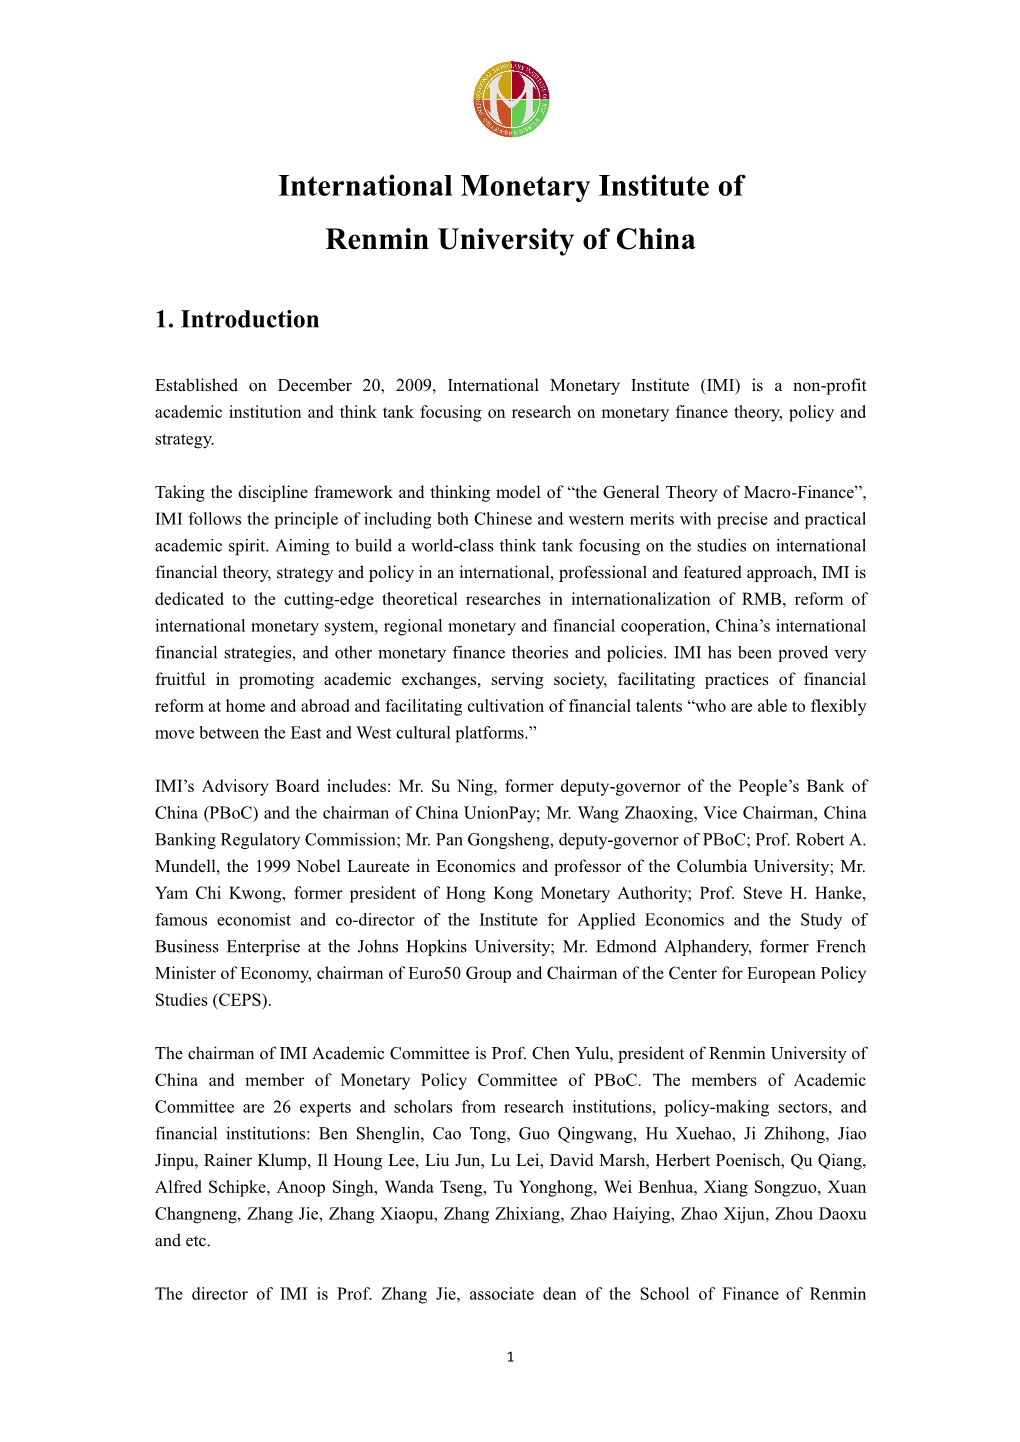 International Monetary Institute of Renmin University of China